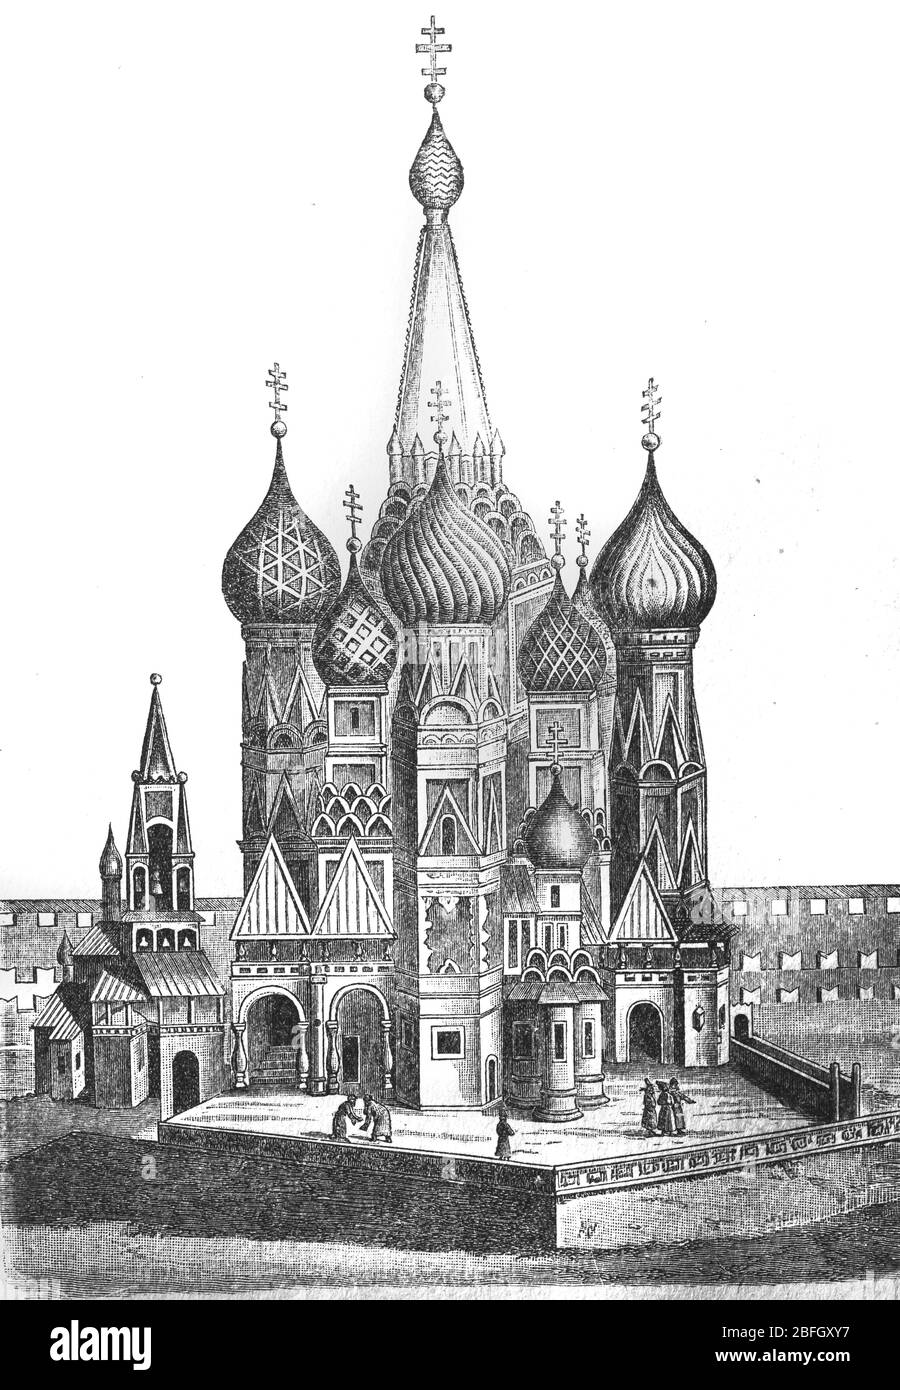 Cathédrale Saint-Basile au XVIIe siècle, Moscou, illustration du livre daté de 1916 Banque D'Images